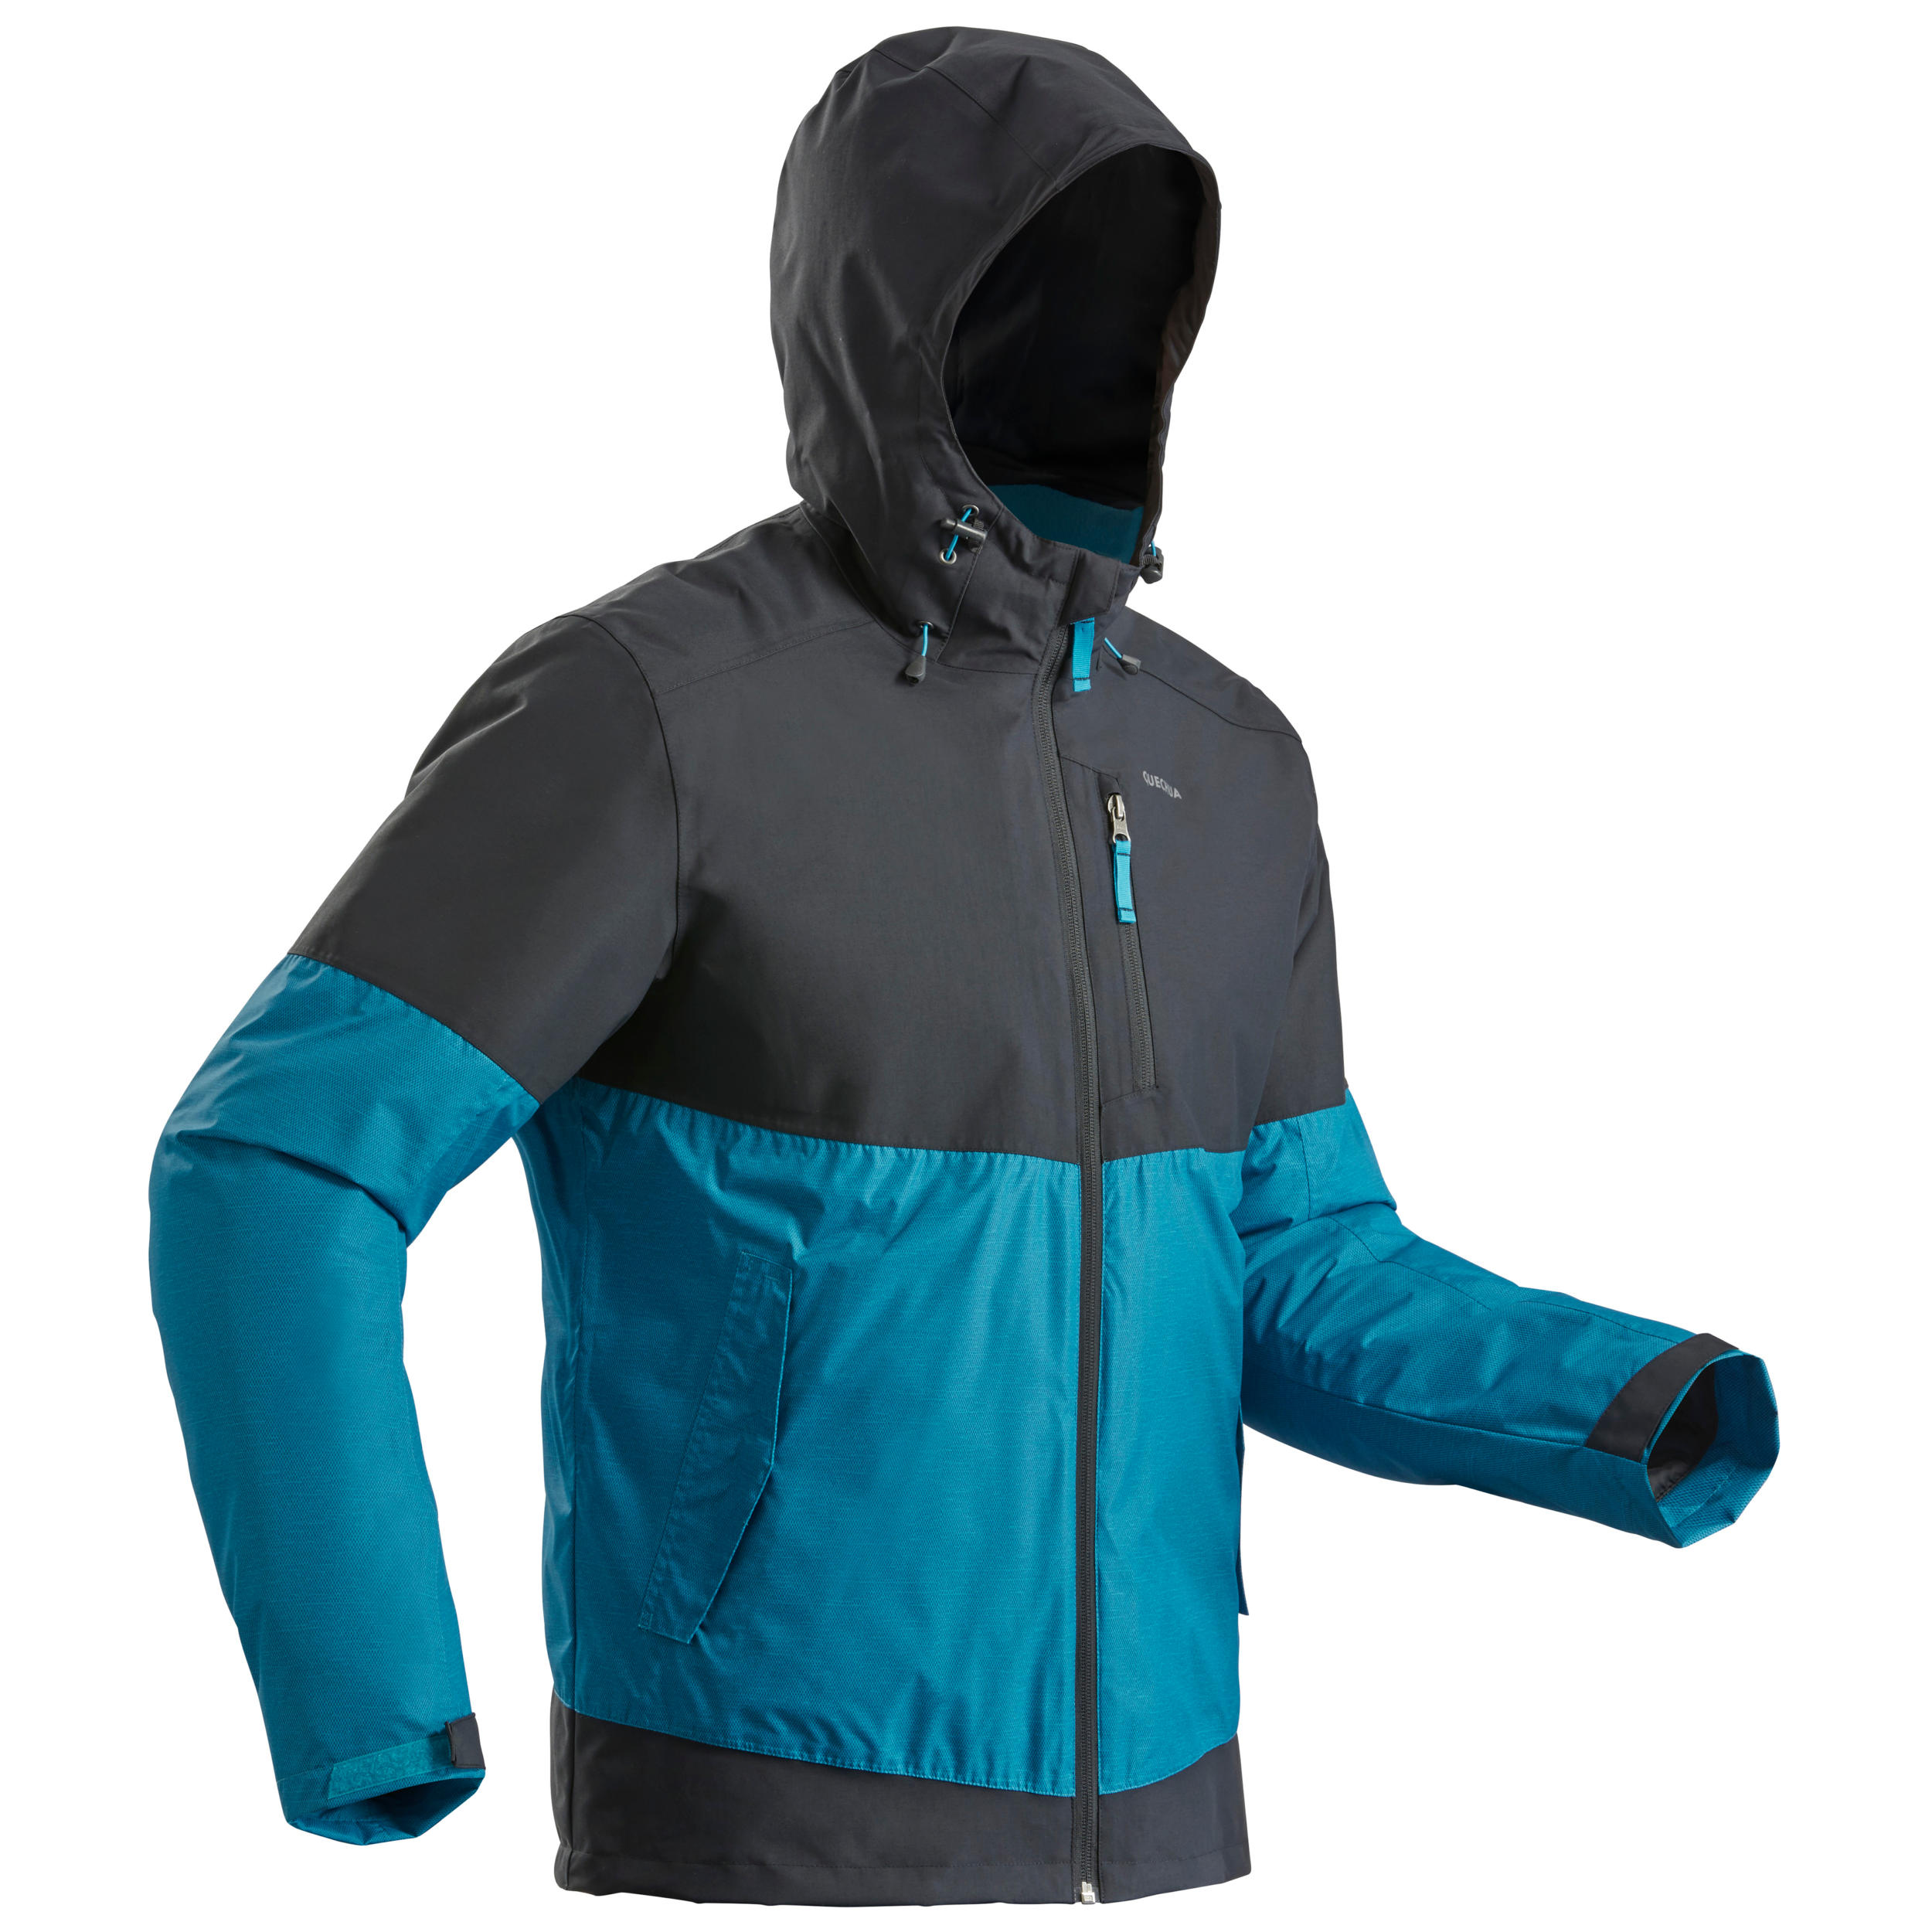 Men’s Waterproof Winter Hiking Jacket - SH100 X-WARM -10°C 1/10